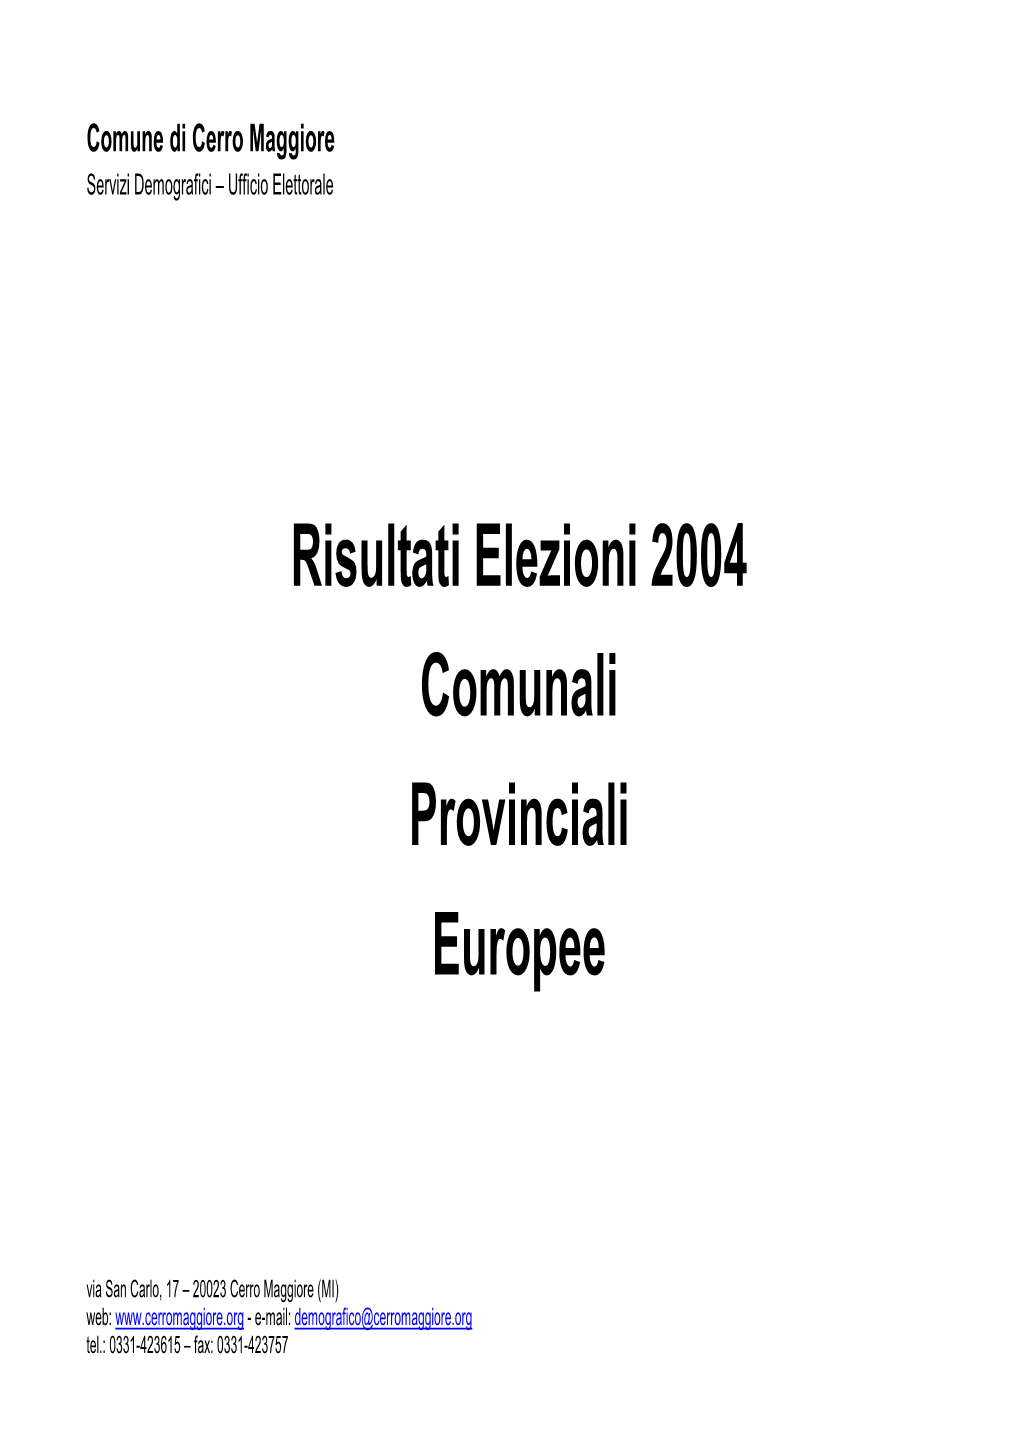 2004 Elezioni Comunali Provinciali Europee